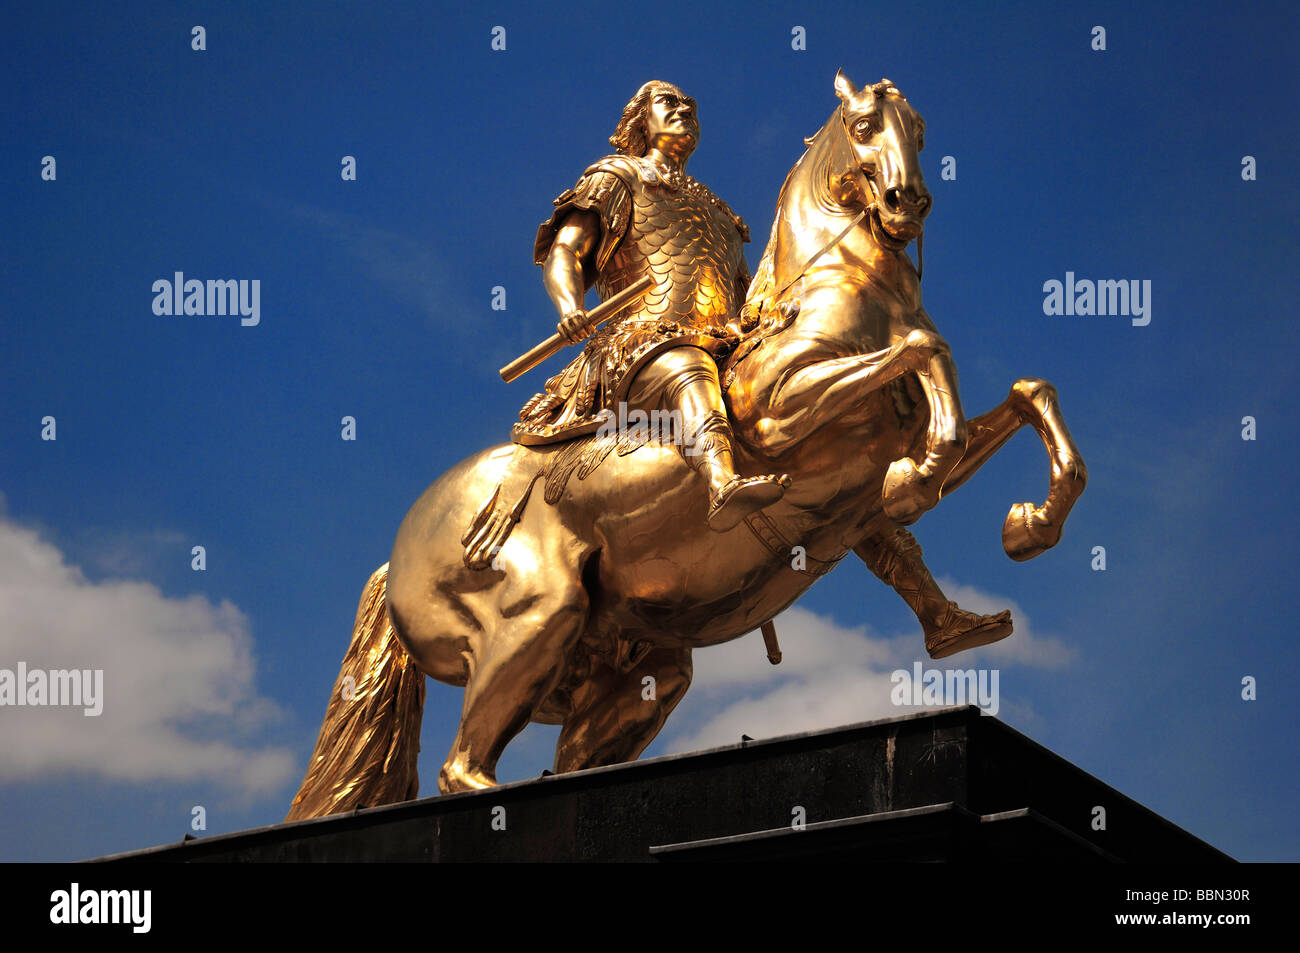 Golden statua equestre di Augusto il Forte contro il cielo blu, Dresda, Sassonia, Germania, Europa Foto Stock